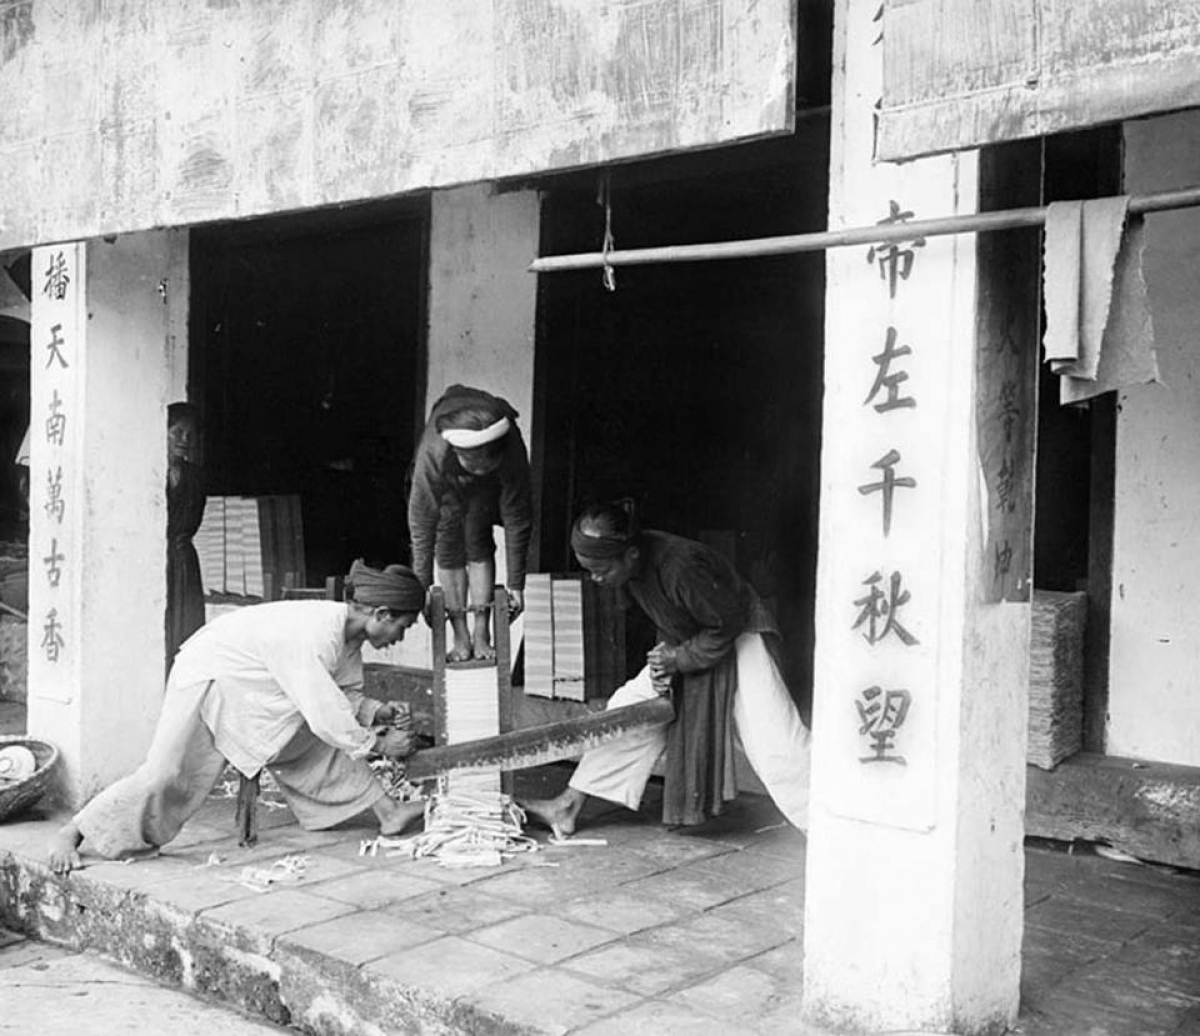 Cảnh xén đóng sách trong đền Ngọc Sơn. Một phụ nữ ép chồng sách xuống và hai nam giới xén các trang giấy.
 